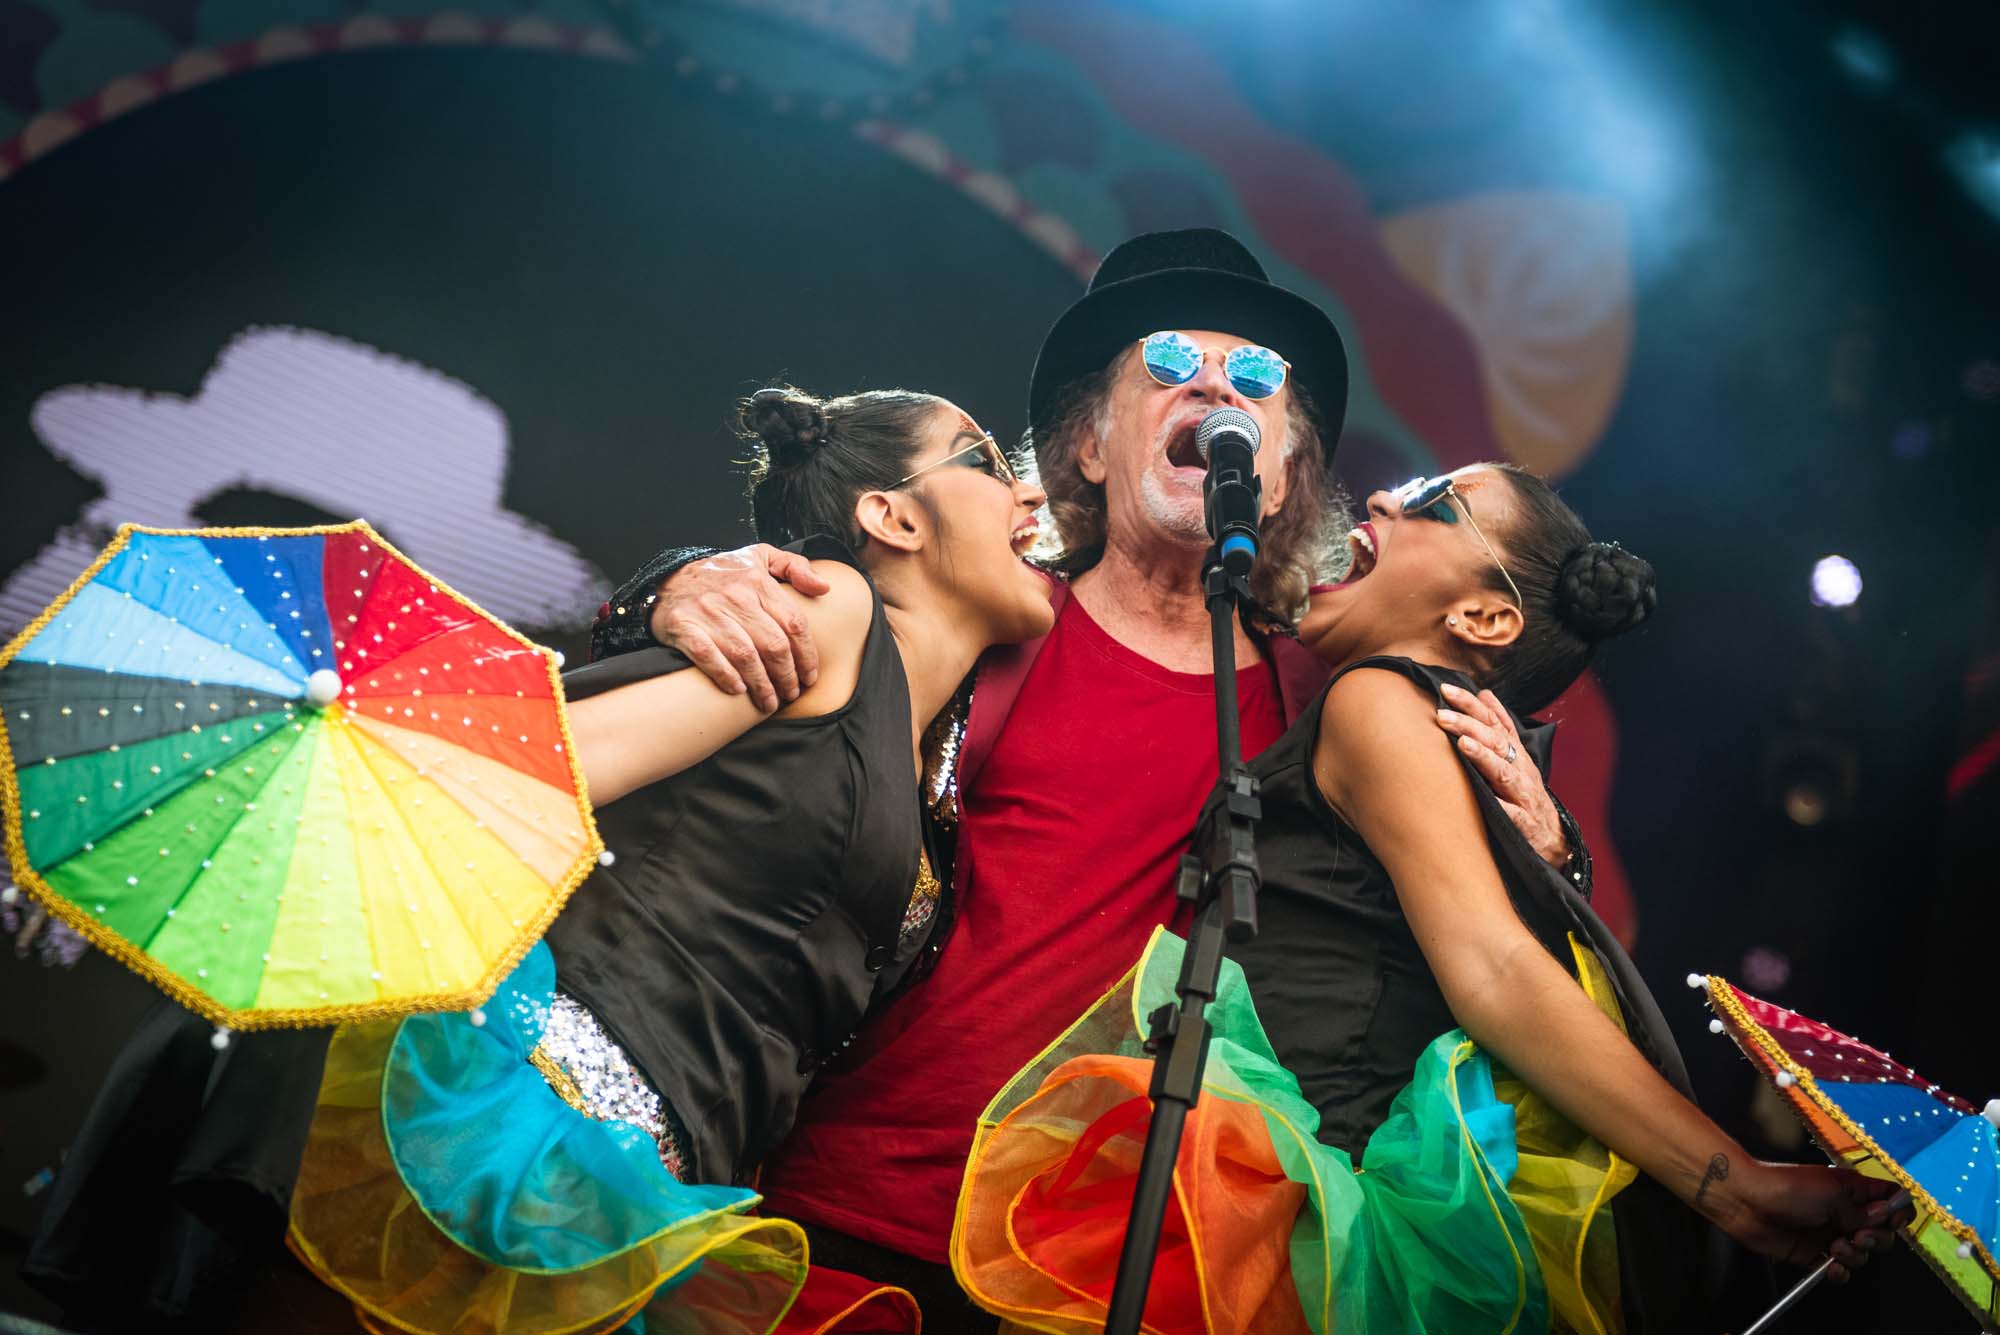 20 atrações vão agitar o festival Carvalheira na Ladeira, em Recife. Vem saber!